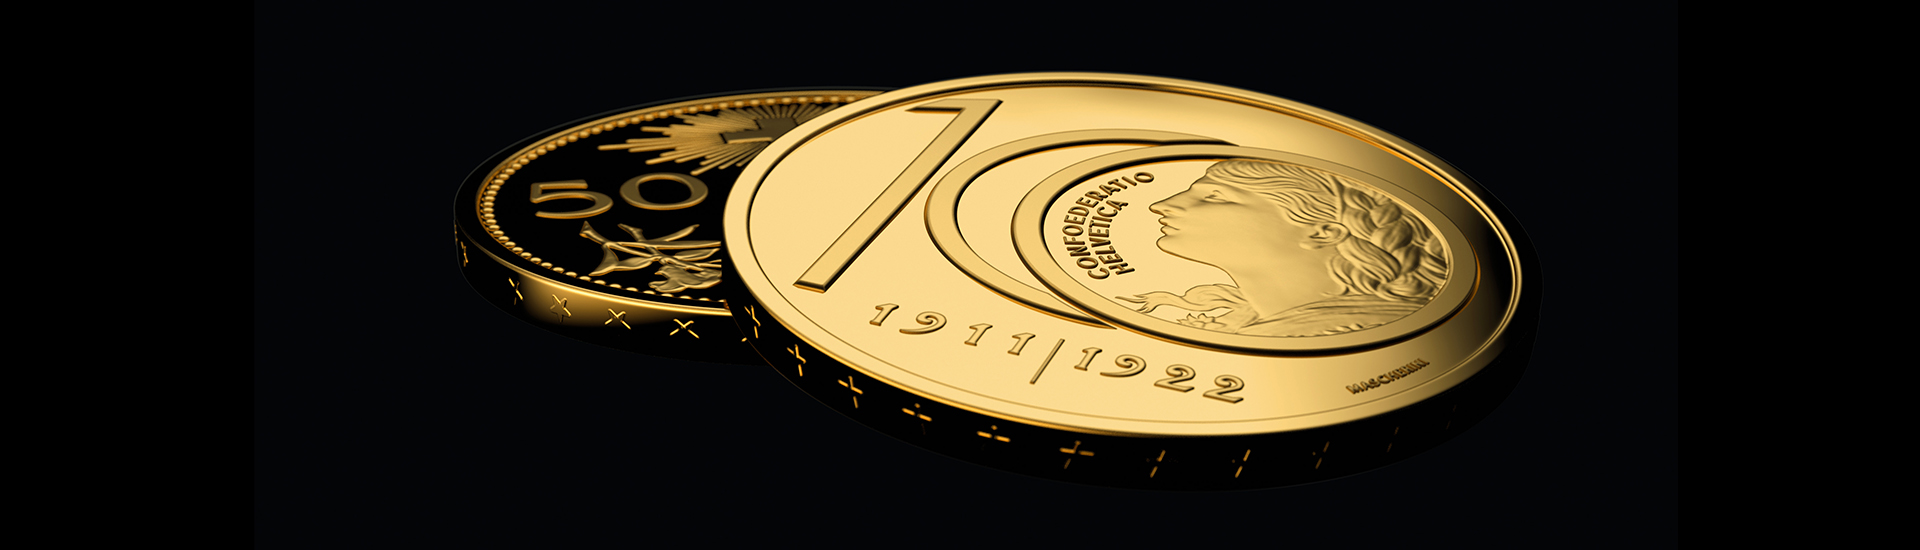 Monnaie spéciale en or 100e anniversaire du Vreneli